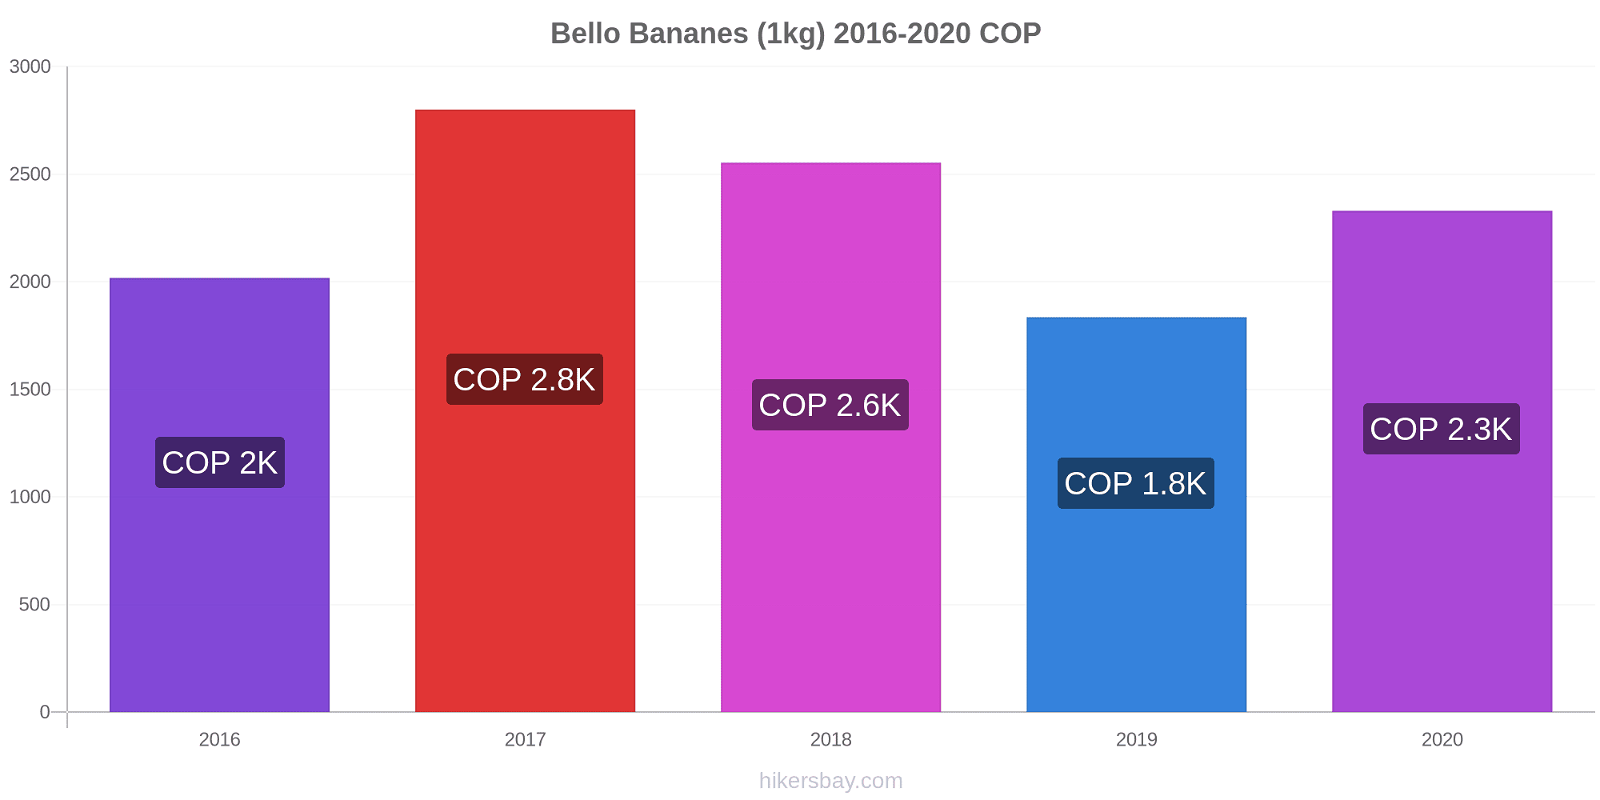 Bello changements de prix Bananes (1kg) hikersbay.com